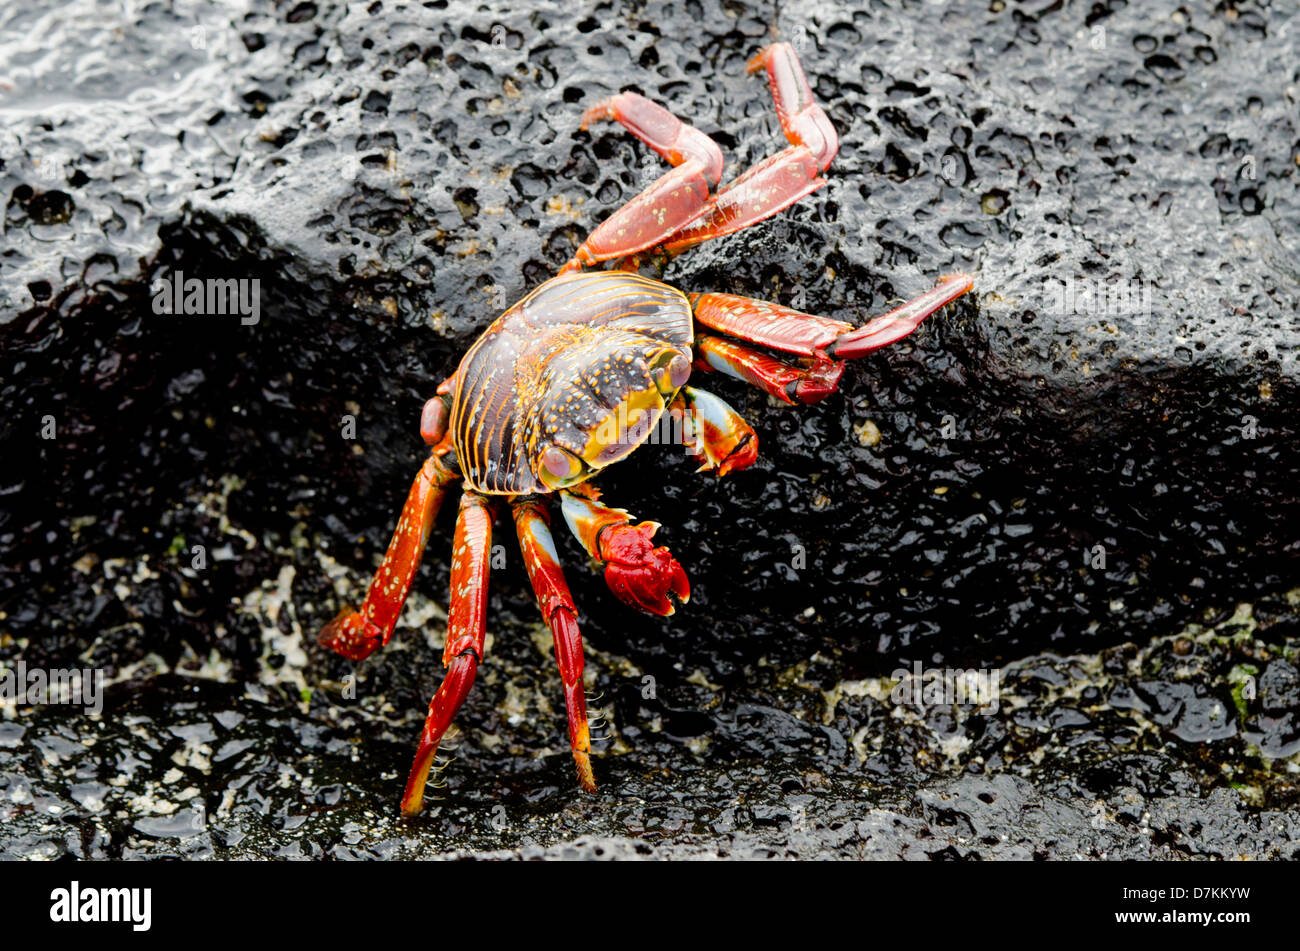 Ecuador, Galapagos, Floreana, Punta Cormoran. Colorful Sally lightfoot crab (Wild: Grapsus grapsus) on lava rock. Stock Photo